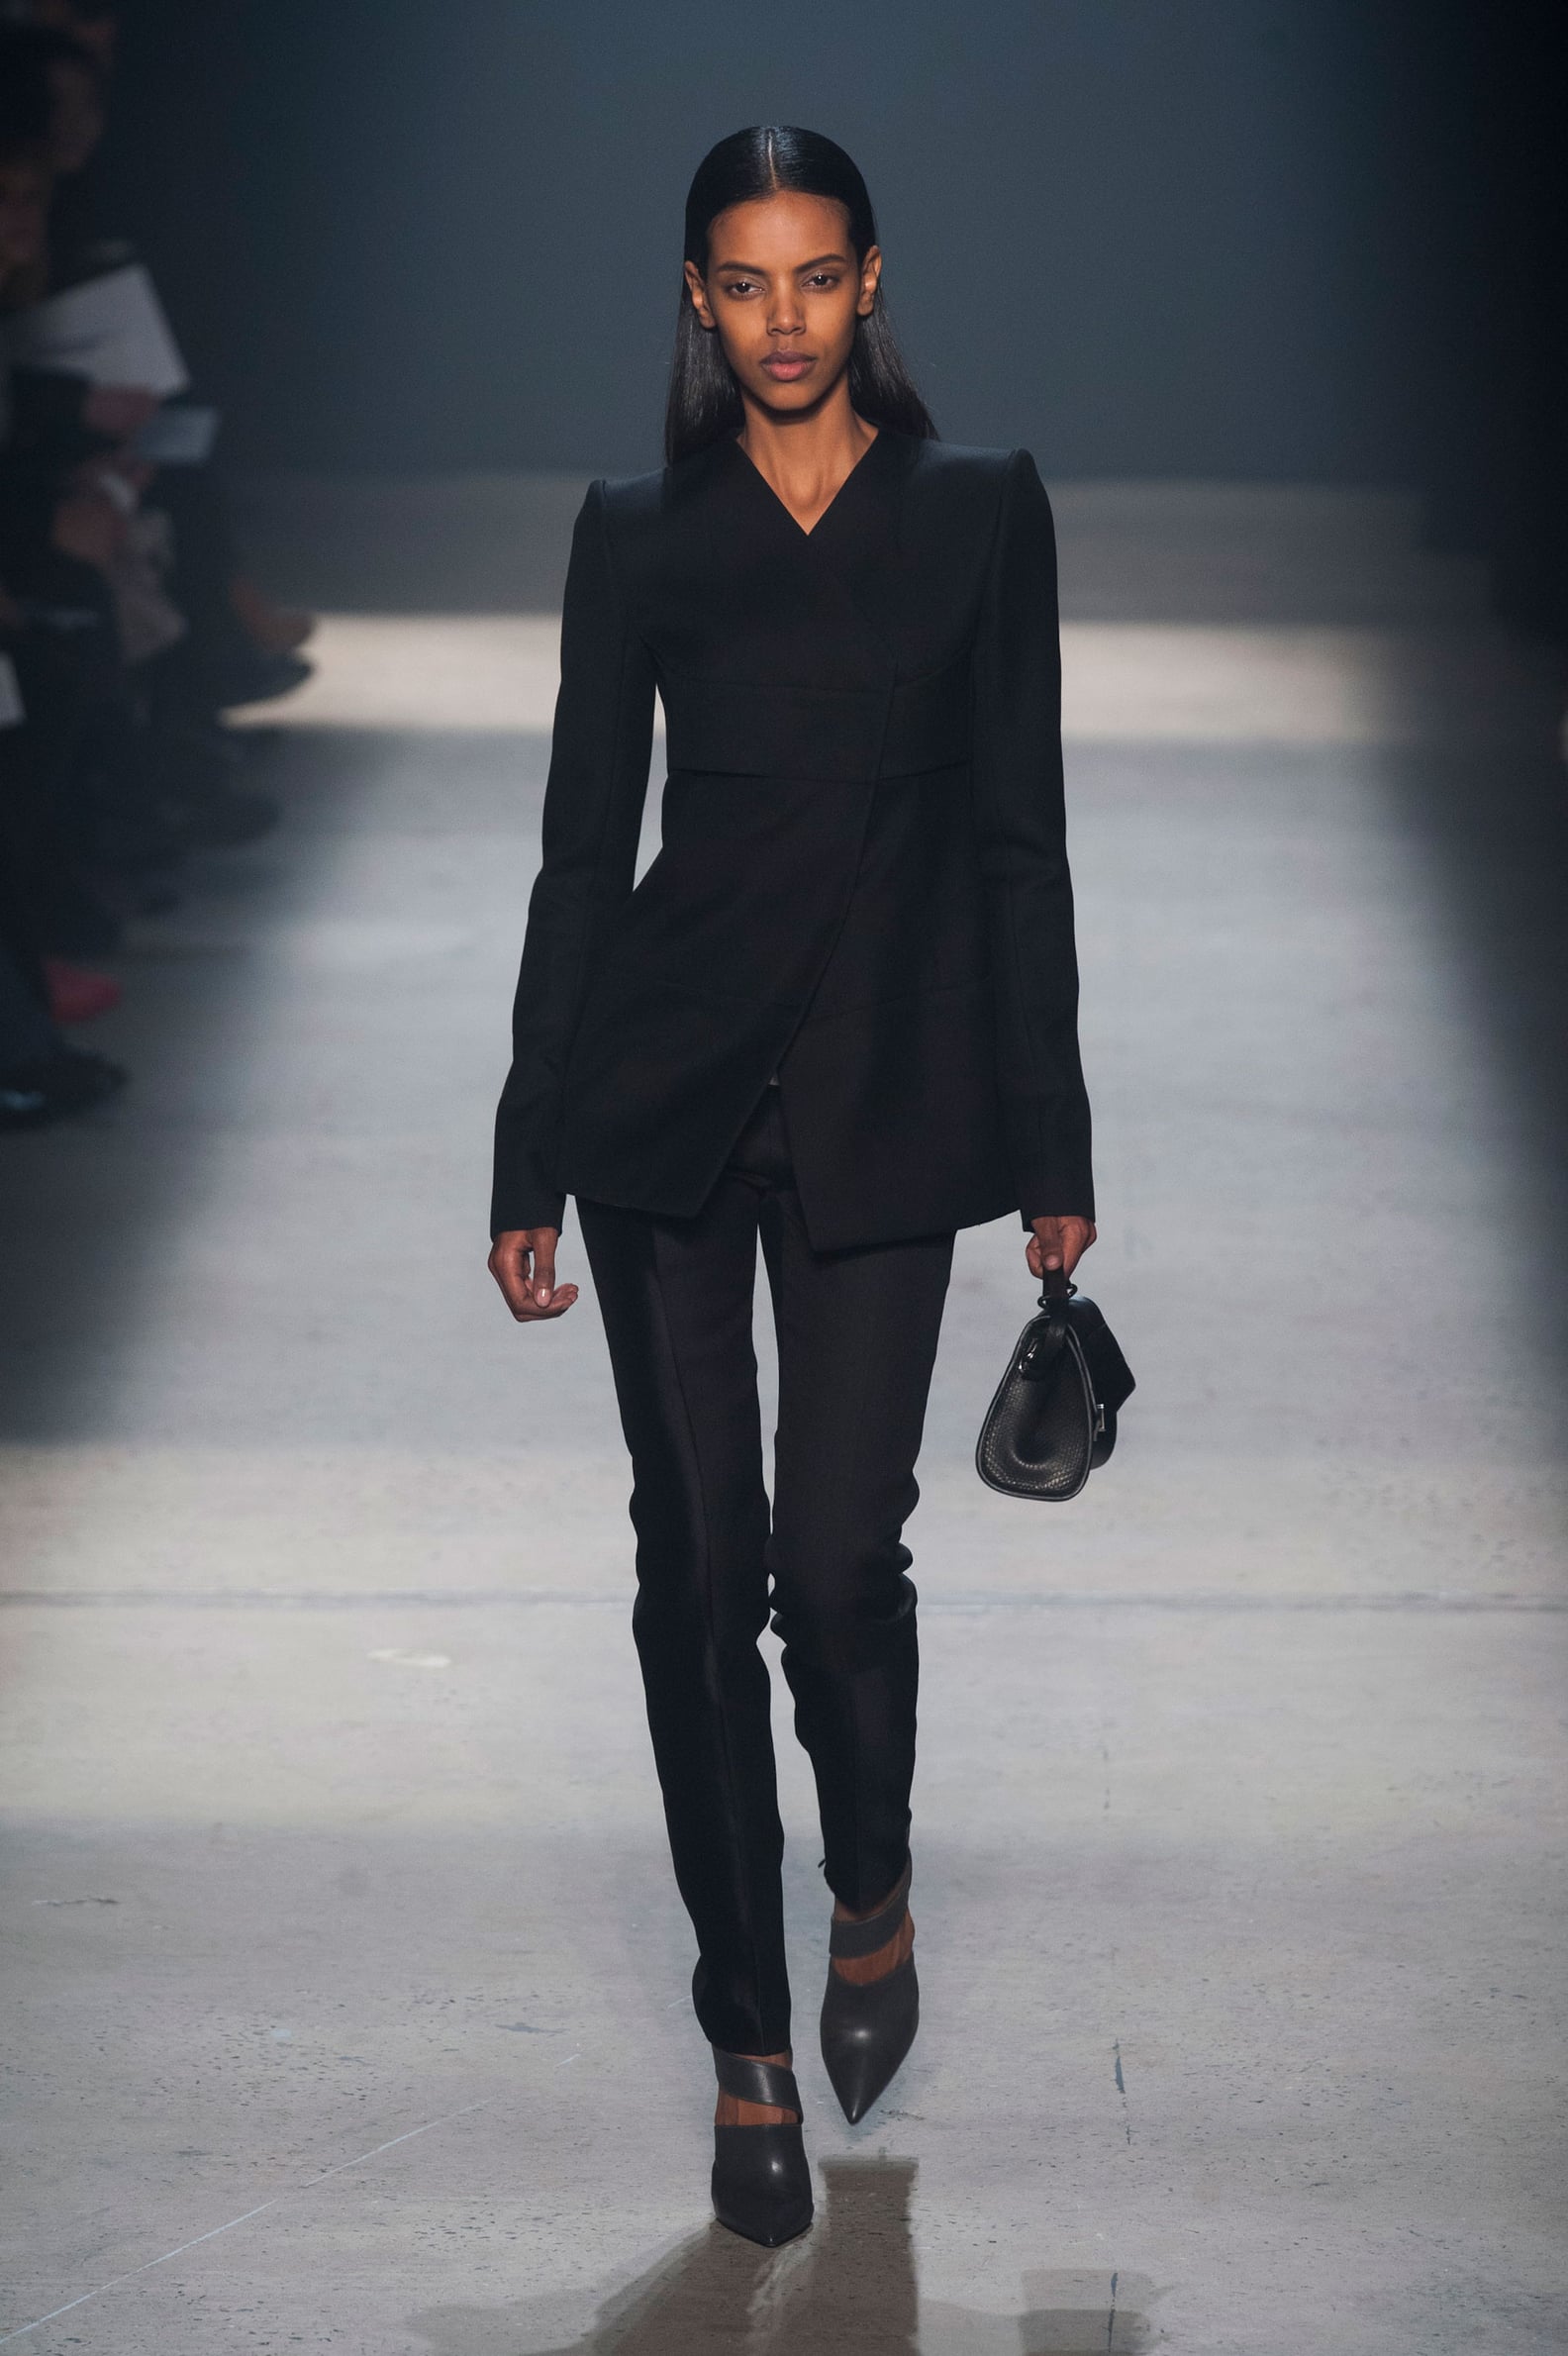 Narciso Rodriguez Fall 2014 Runway Show | NY Fashion Week | POPSUGAR ...